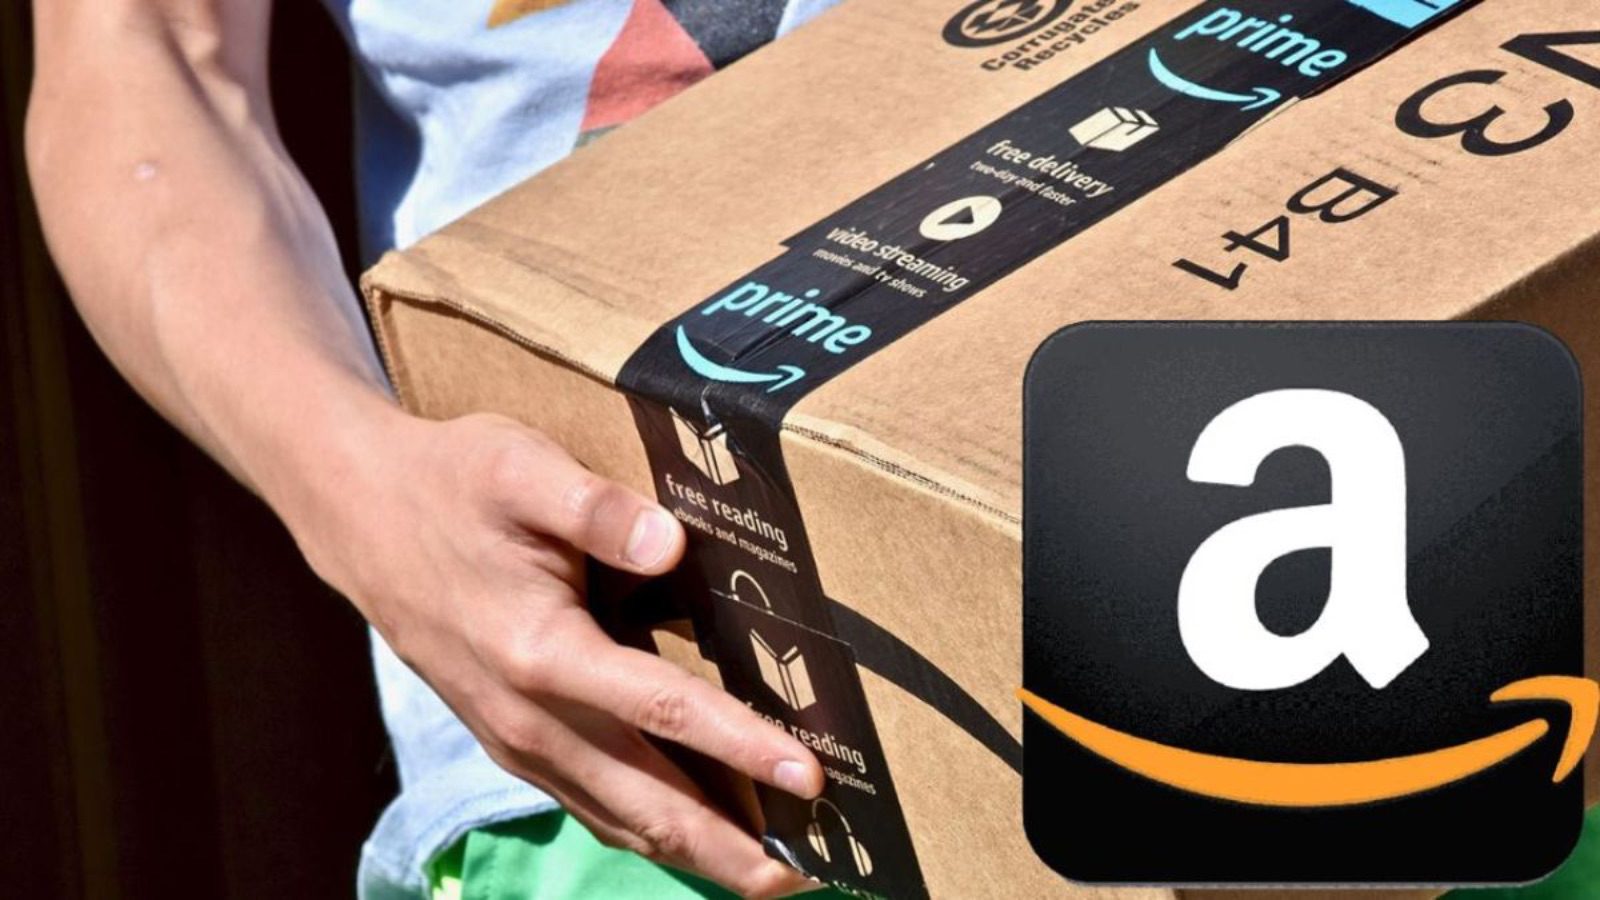 Amazon distrugge Euronics con offerte shock al 70% di sconto 